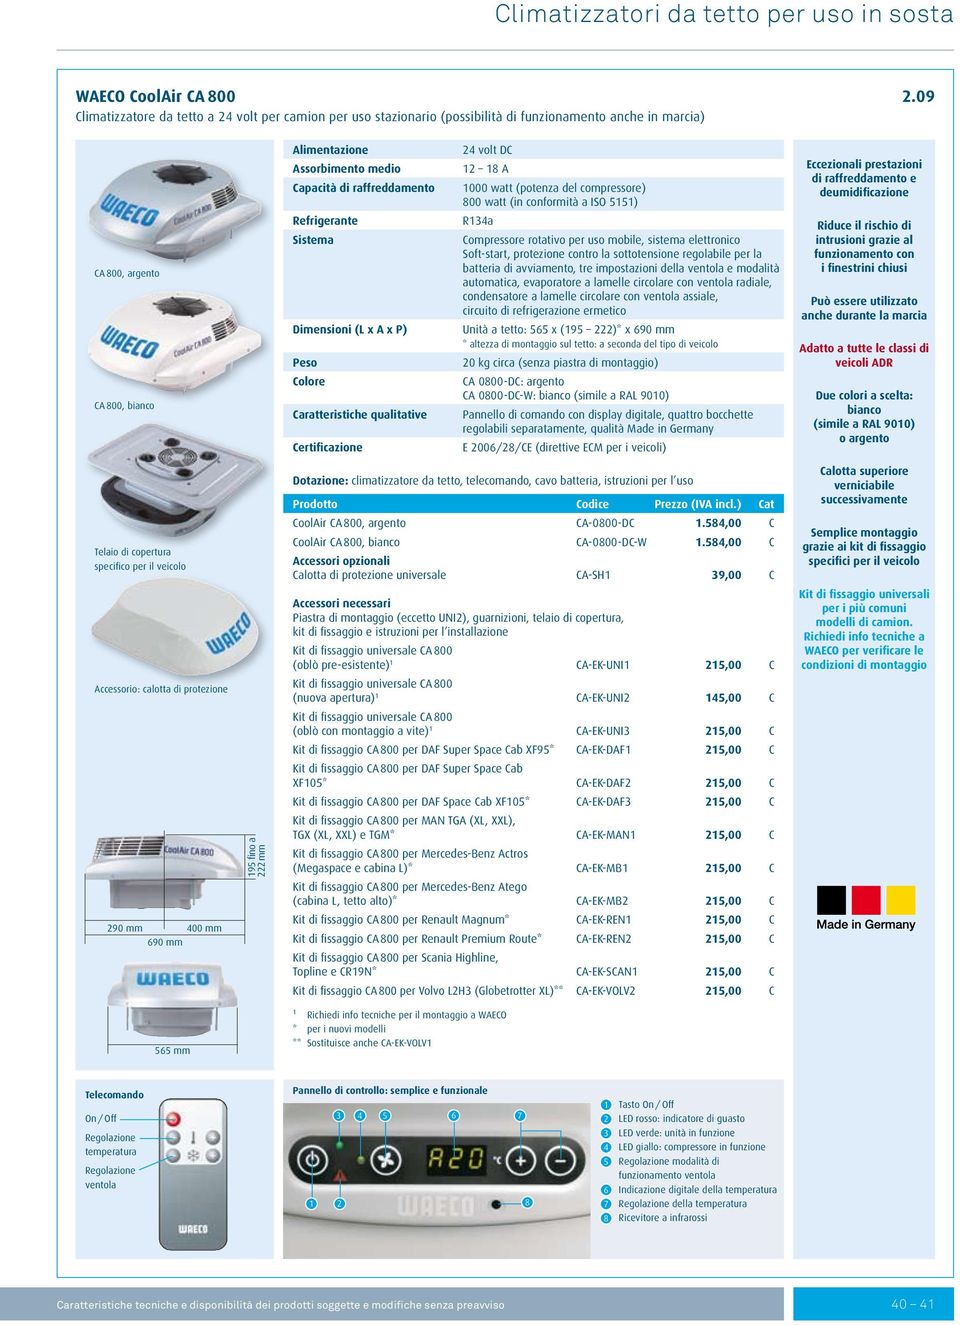 raffreddamento Refrigerante Sistema Dimensioni (L x A x P) Peso Colore Caratteristiche qualitative Certificazione 24 volt DC 12 18 A 1000 watt (potenza del compressore) 800 watt (in conformità a ISO